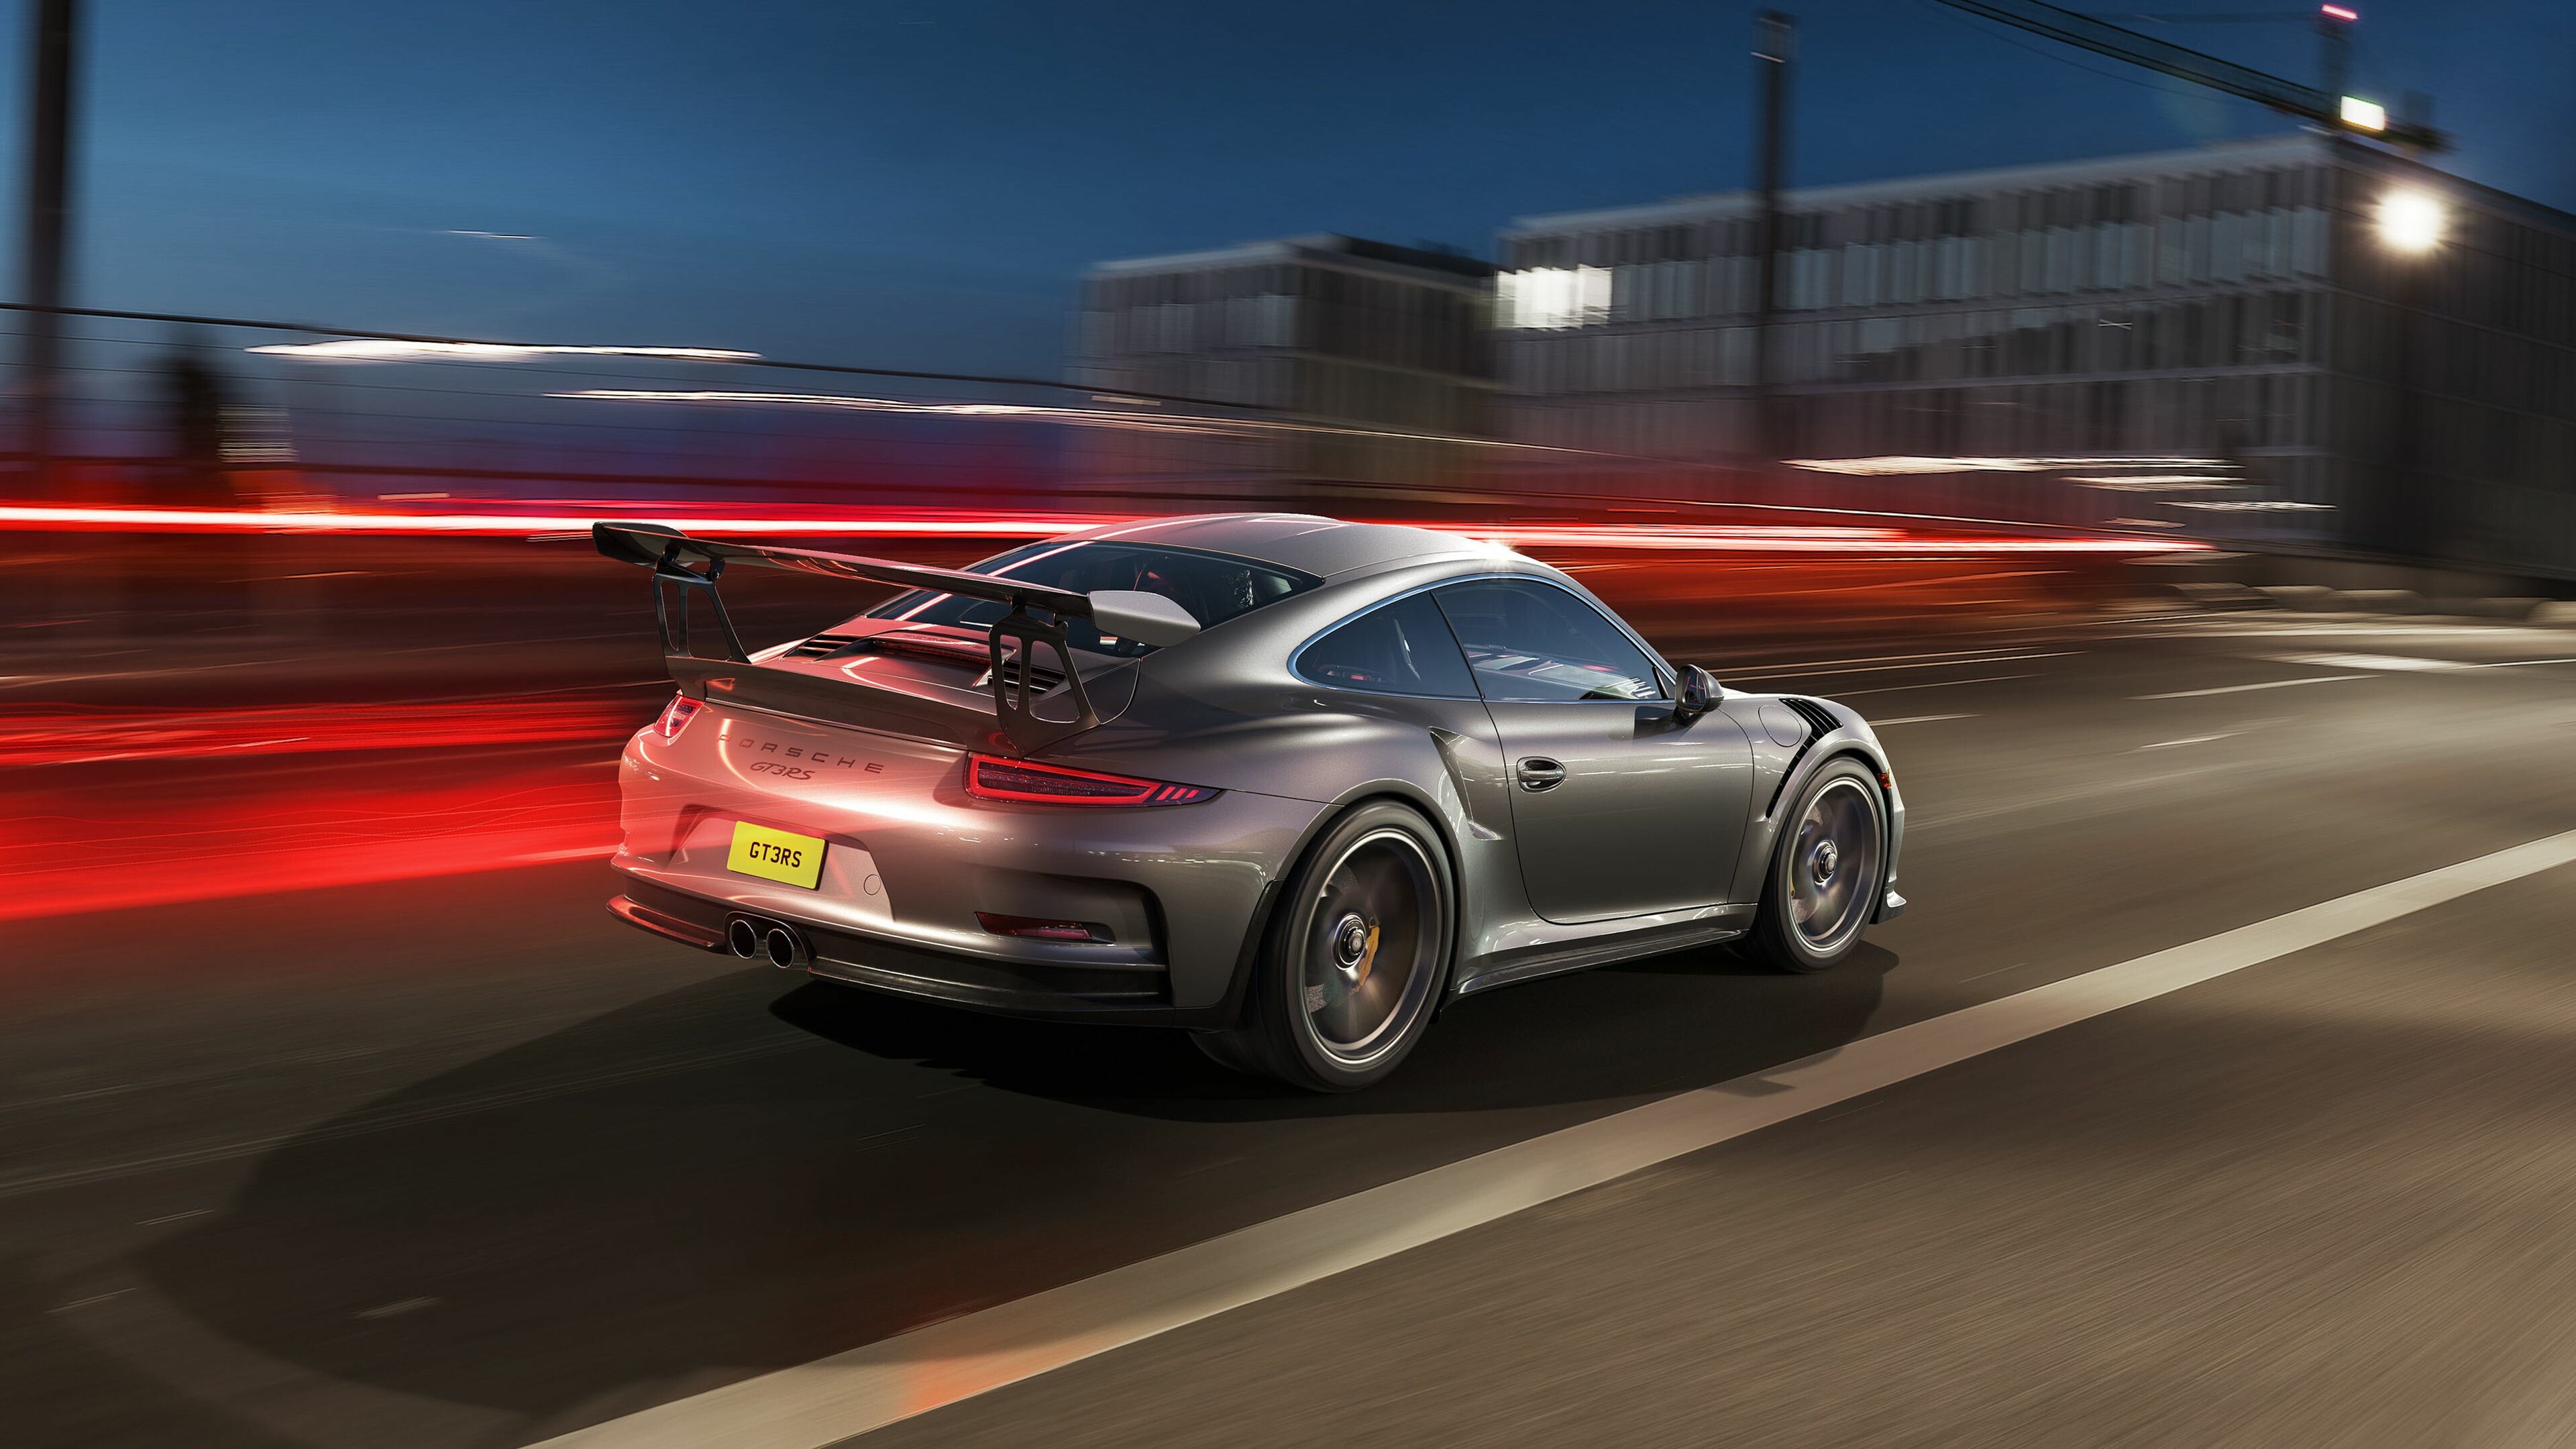 Porsche GT3 RS rear, 4K wallpaper, Porsche wallpapers, HD quality, 3840x2160 4K Desktop